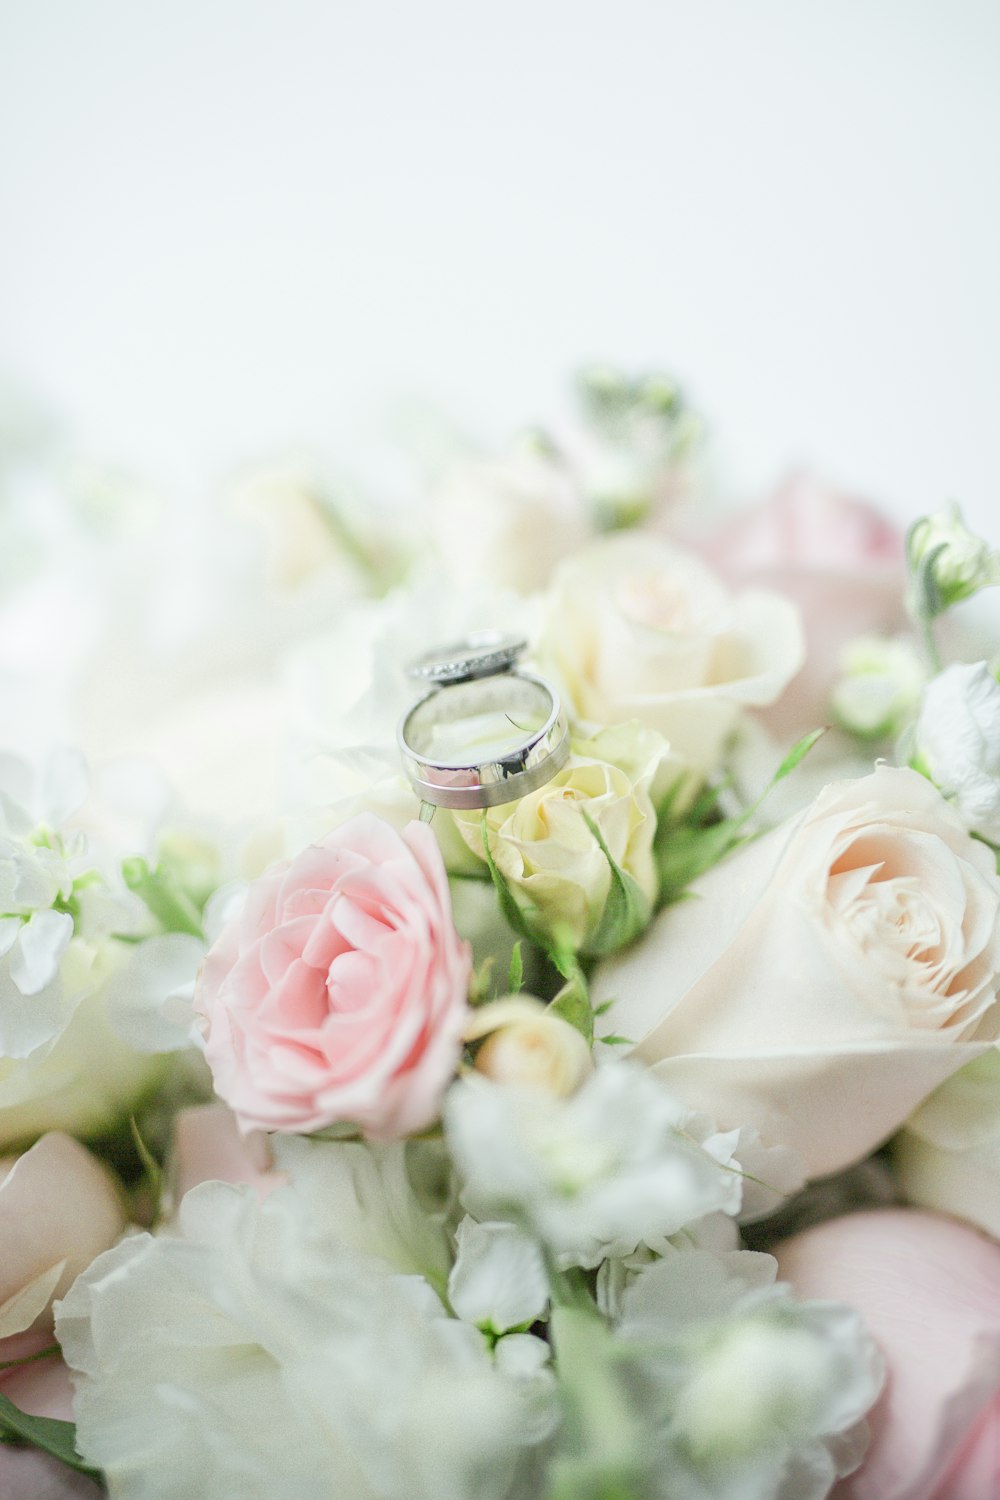 anel de prata no buquê de rosas brancas e cor-de-rosa